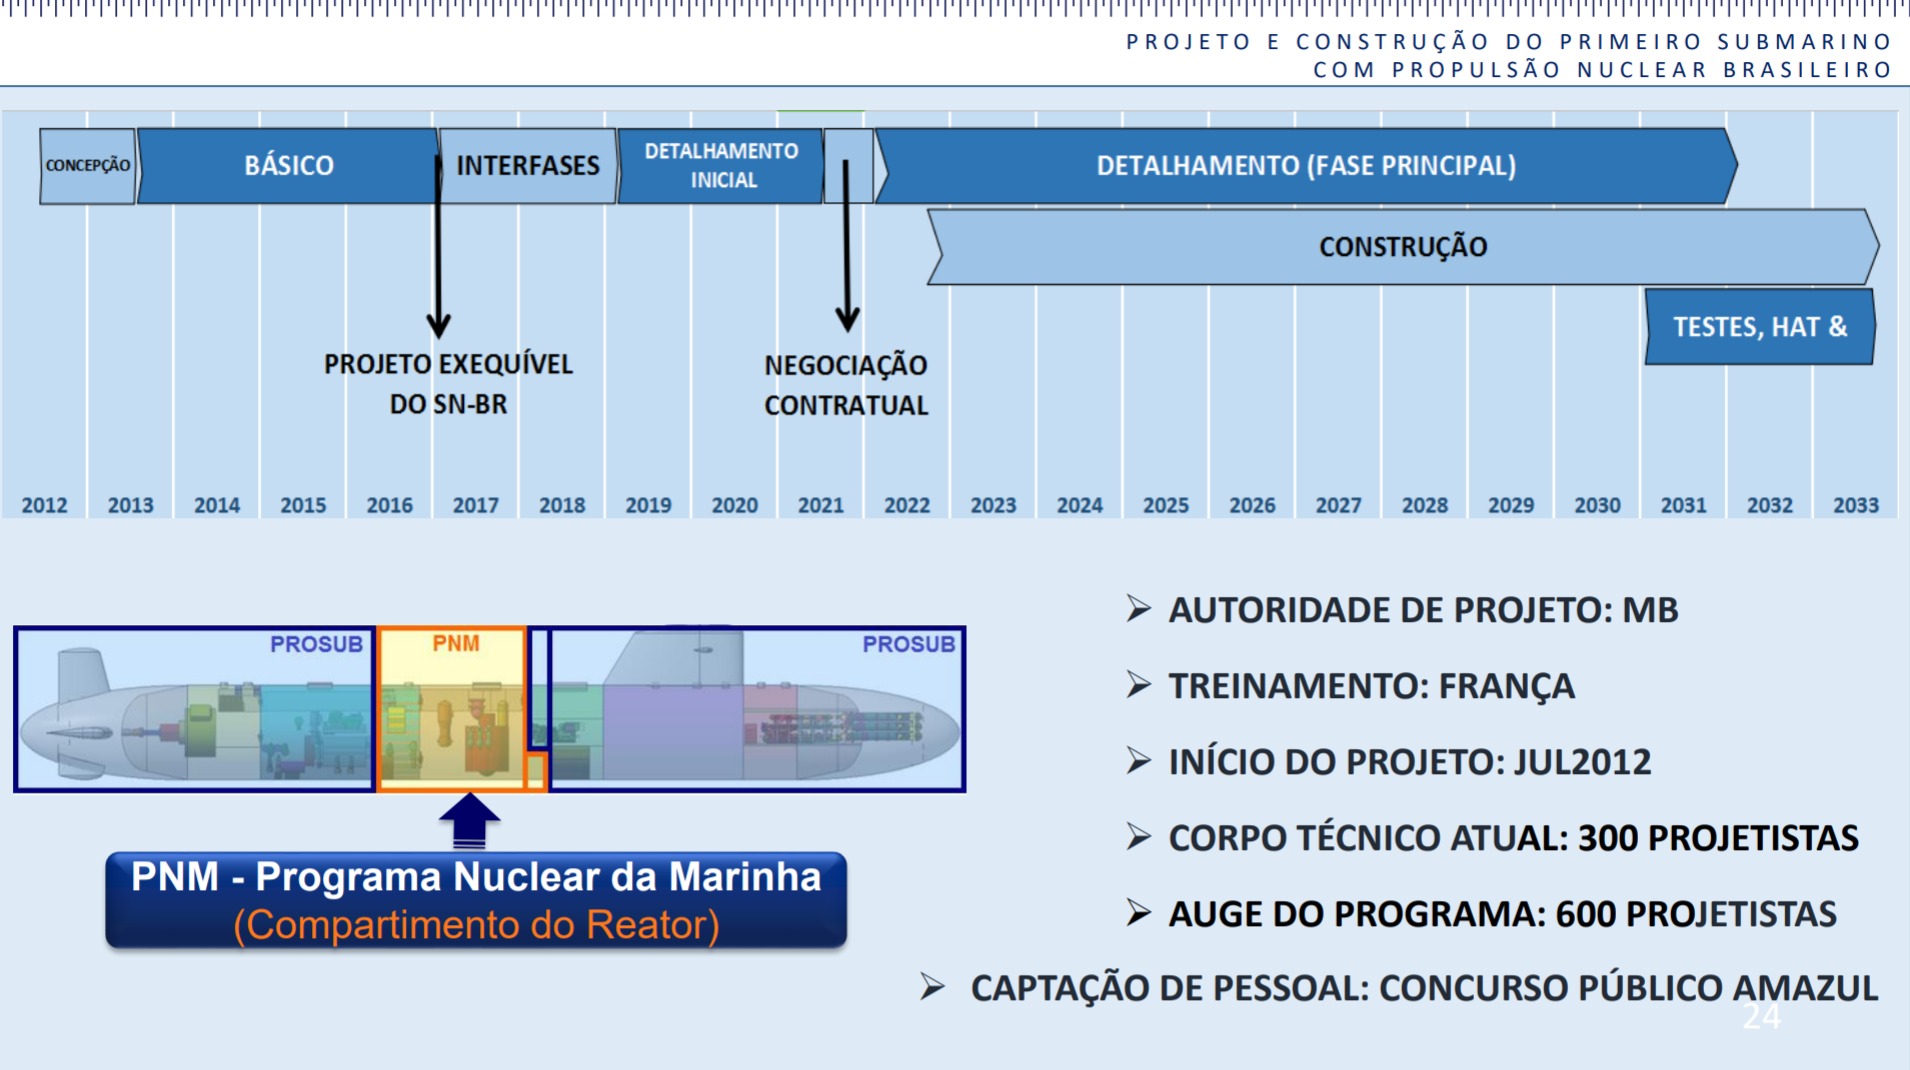 https://www.naval.com.br/blog/wp-content/uploads/2020/08/Submarino-Nuclear-brasileiro-3.jpeg